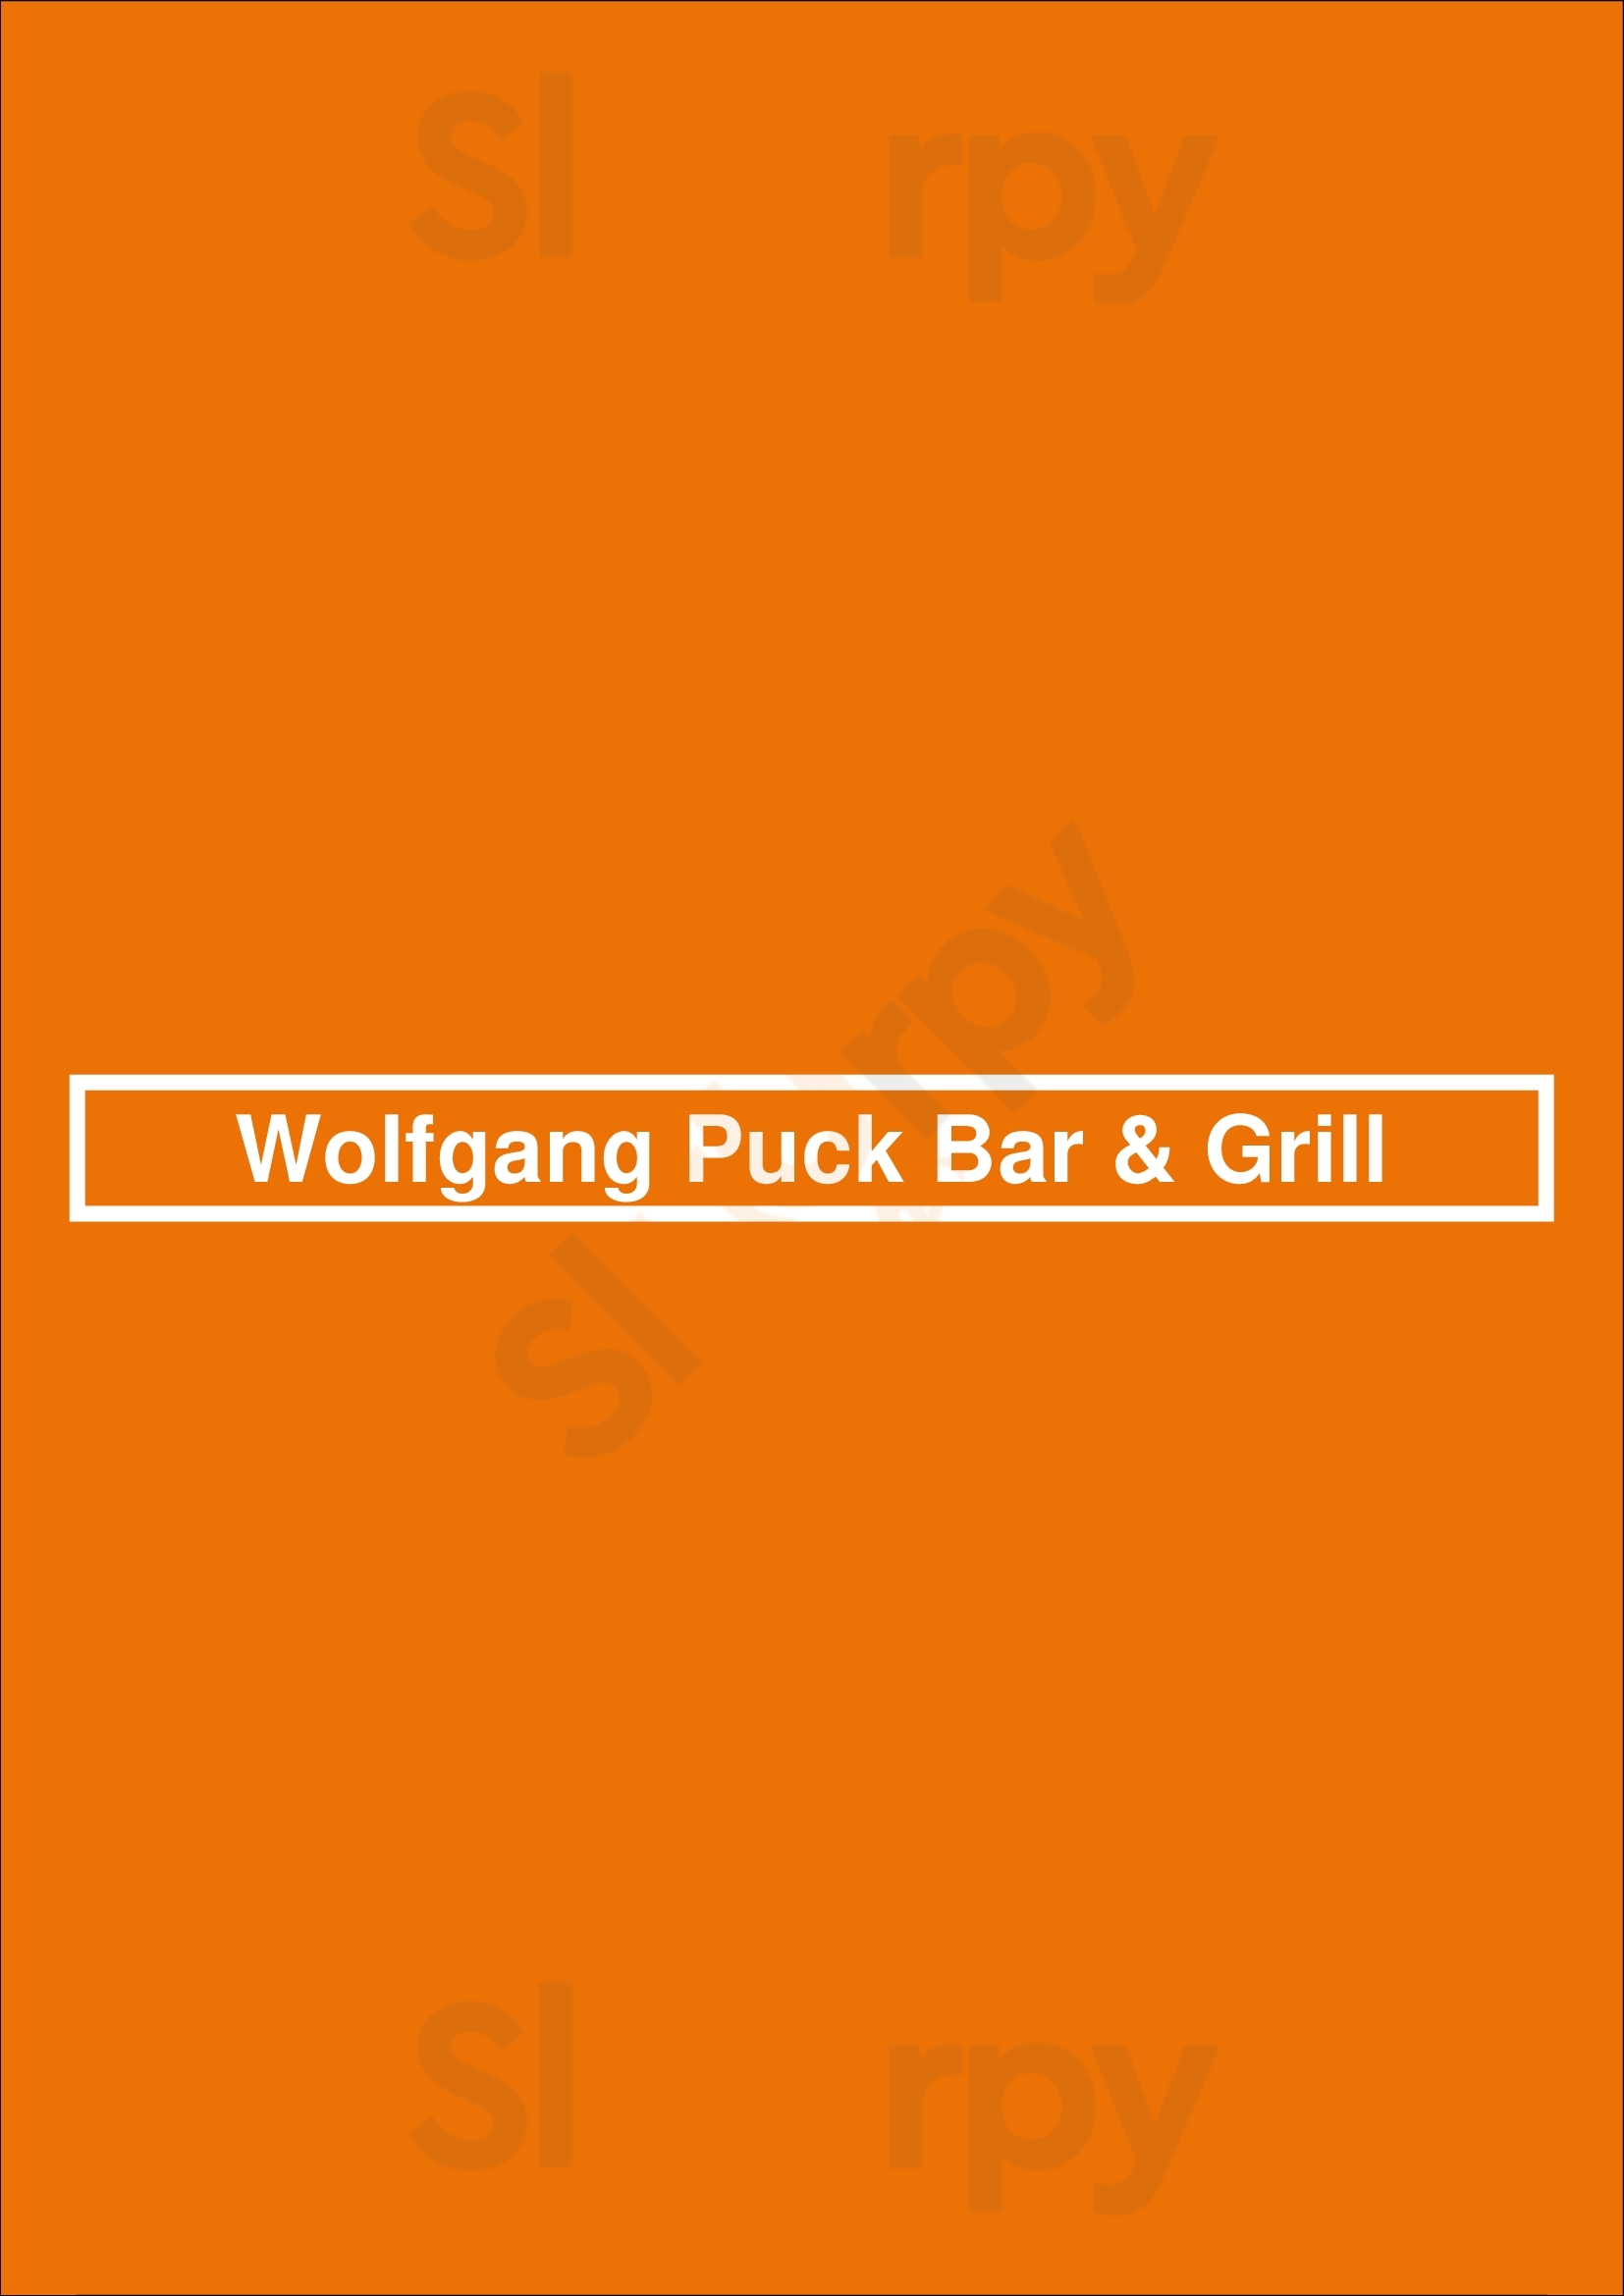 Wolfgang Puck Players Locker Las Vegas Menu - 1